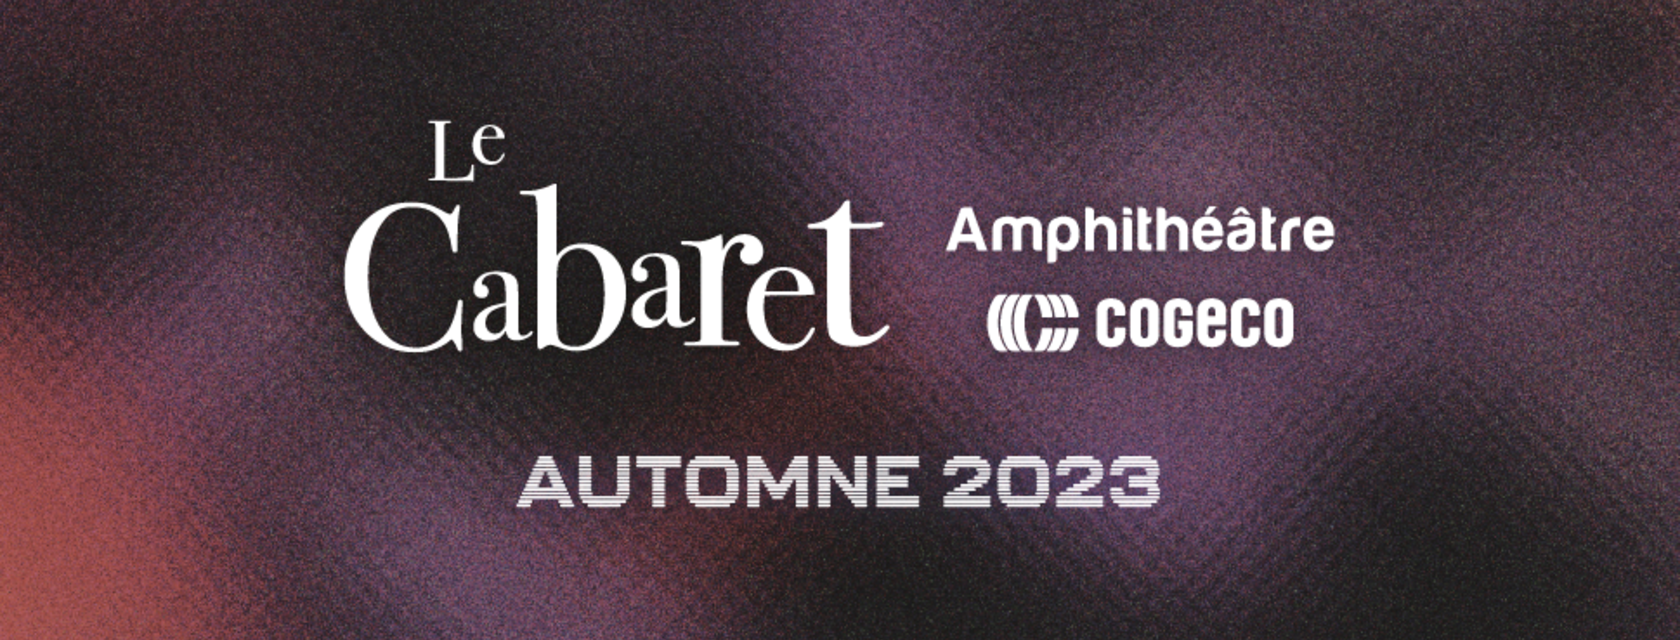 Le Cabaret de l’Amphithéâtre Cogeco ajoute quatre spectacles à sa programmation automne 2023